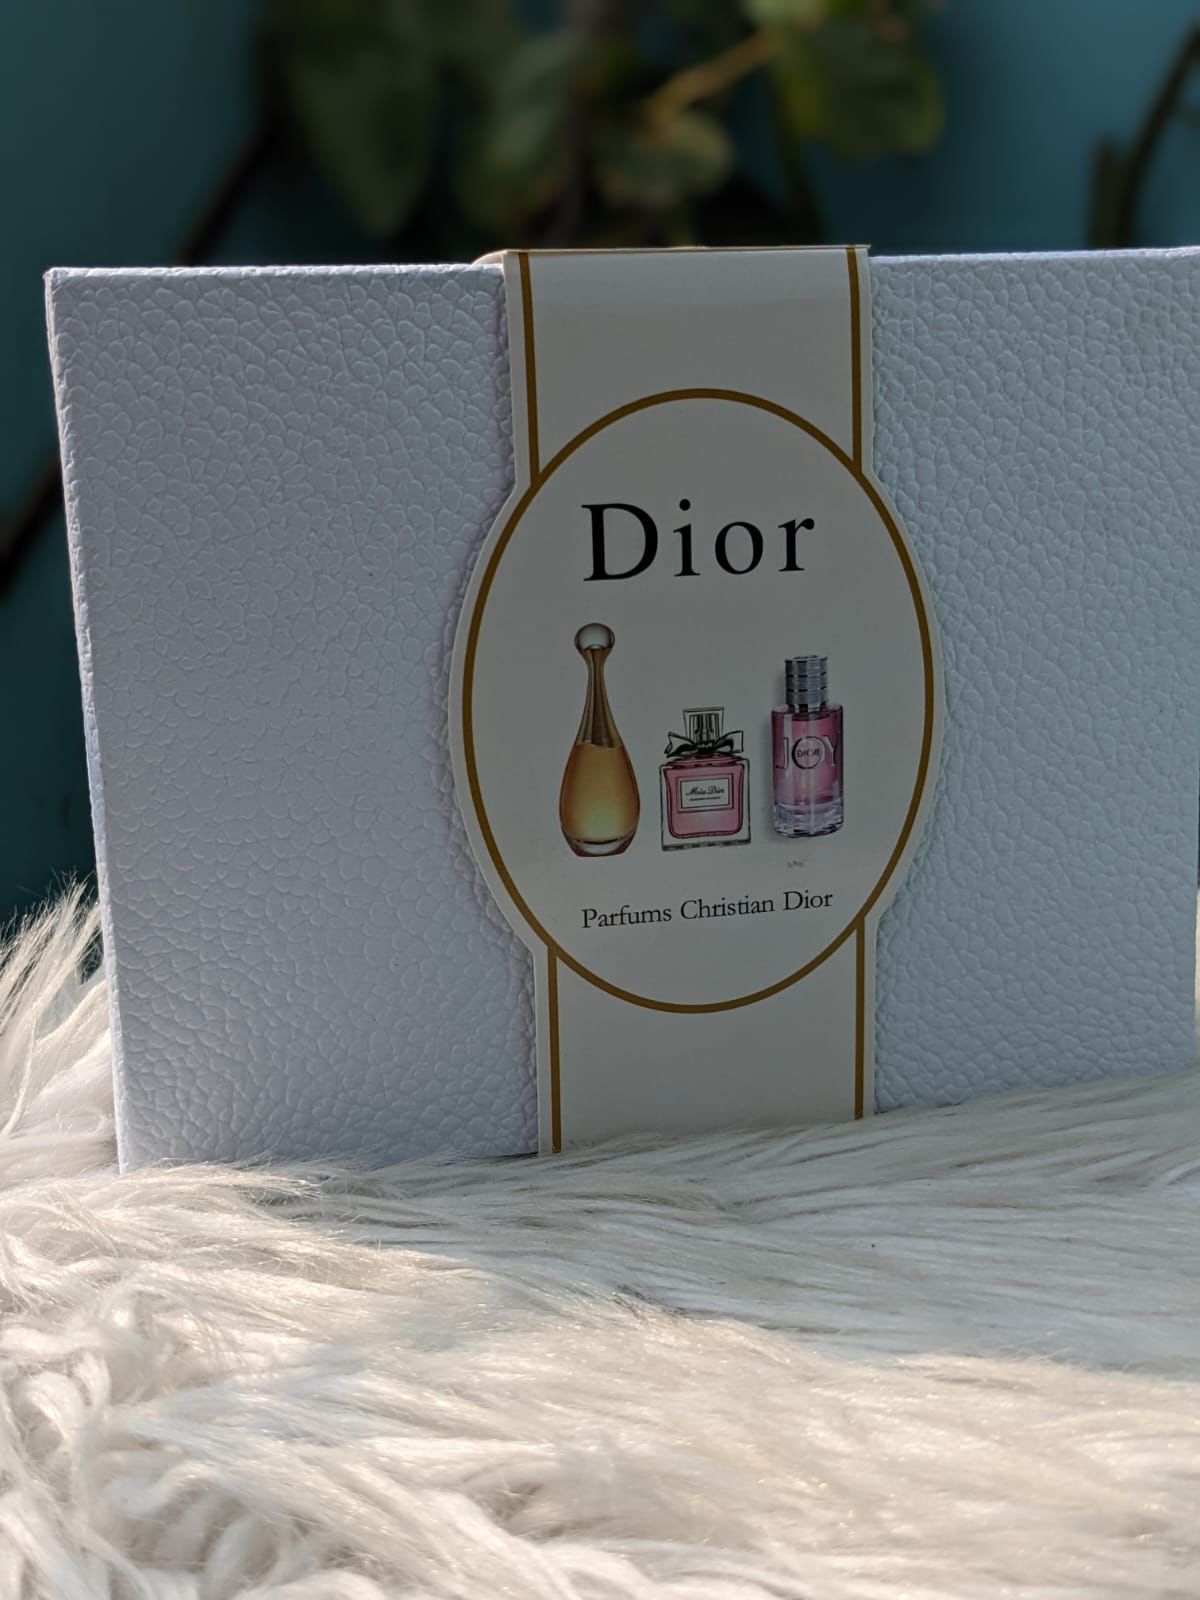 Dior GIFTSET (30 ml each)